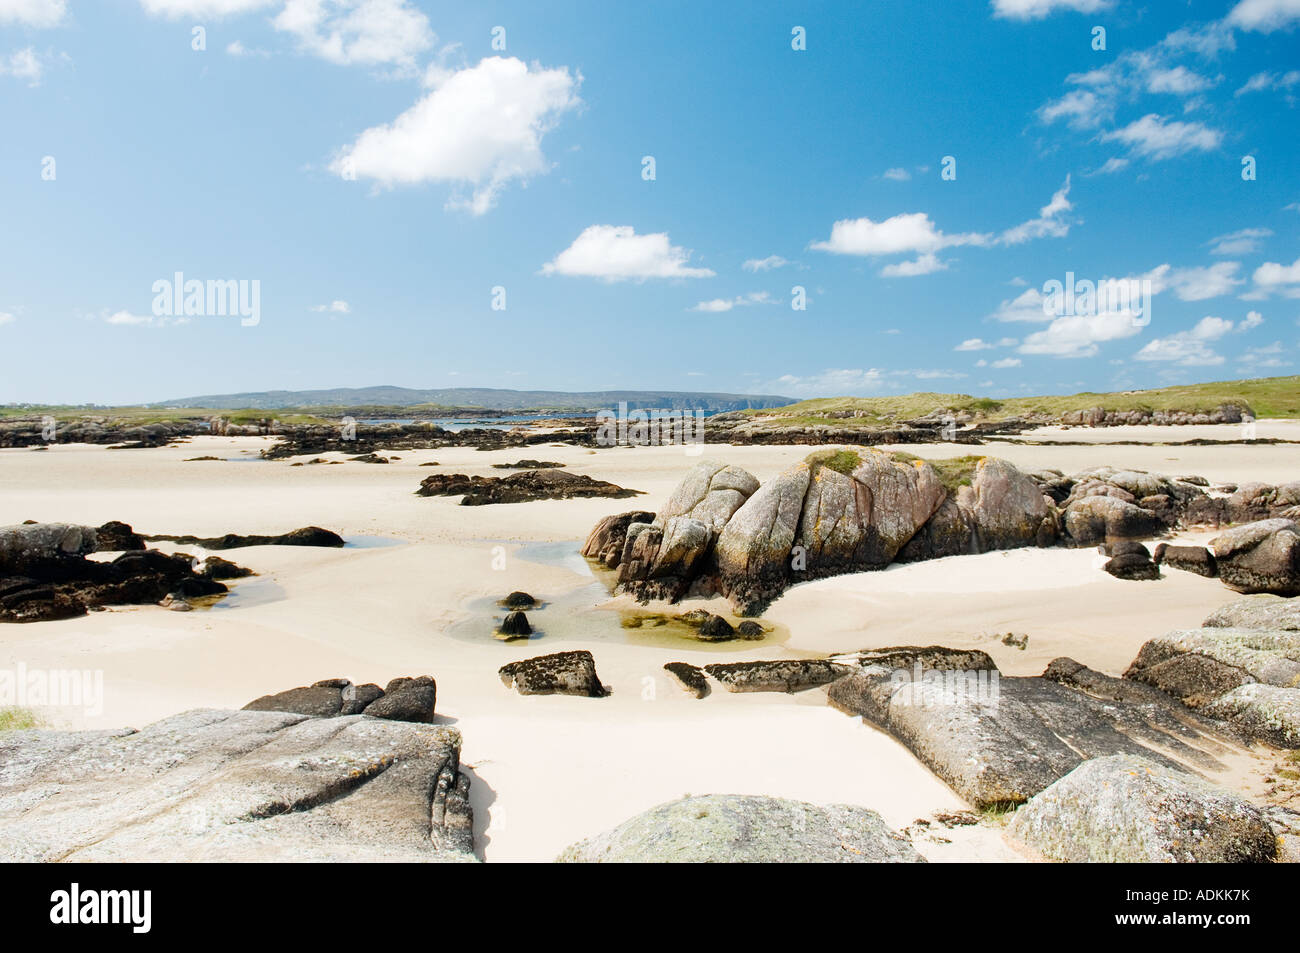 Le bianche sabbie della spiaggia di marea che conduce a Cruit Island, vicino Burtonport sulla costa occidentale della Contea di Donegal, Irlanda. Foto Stock